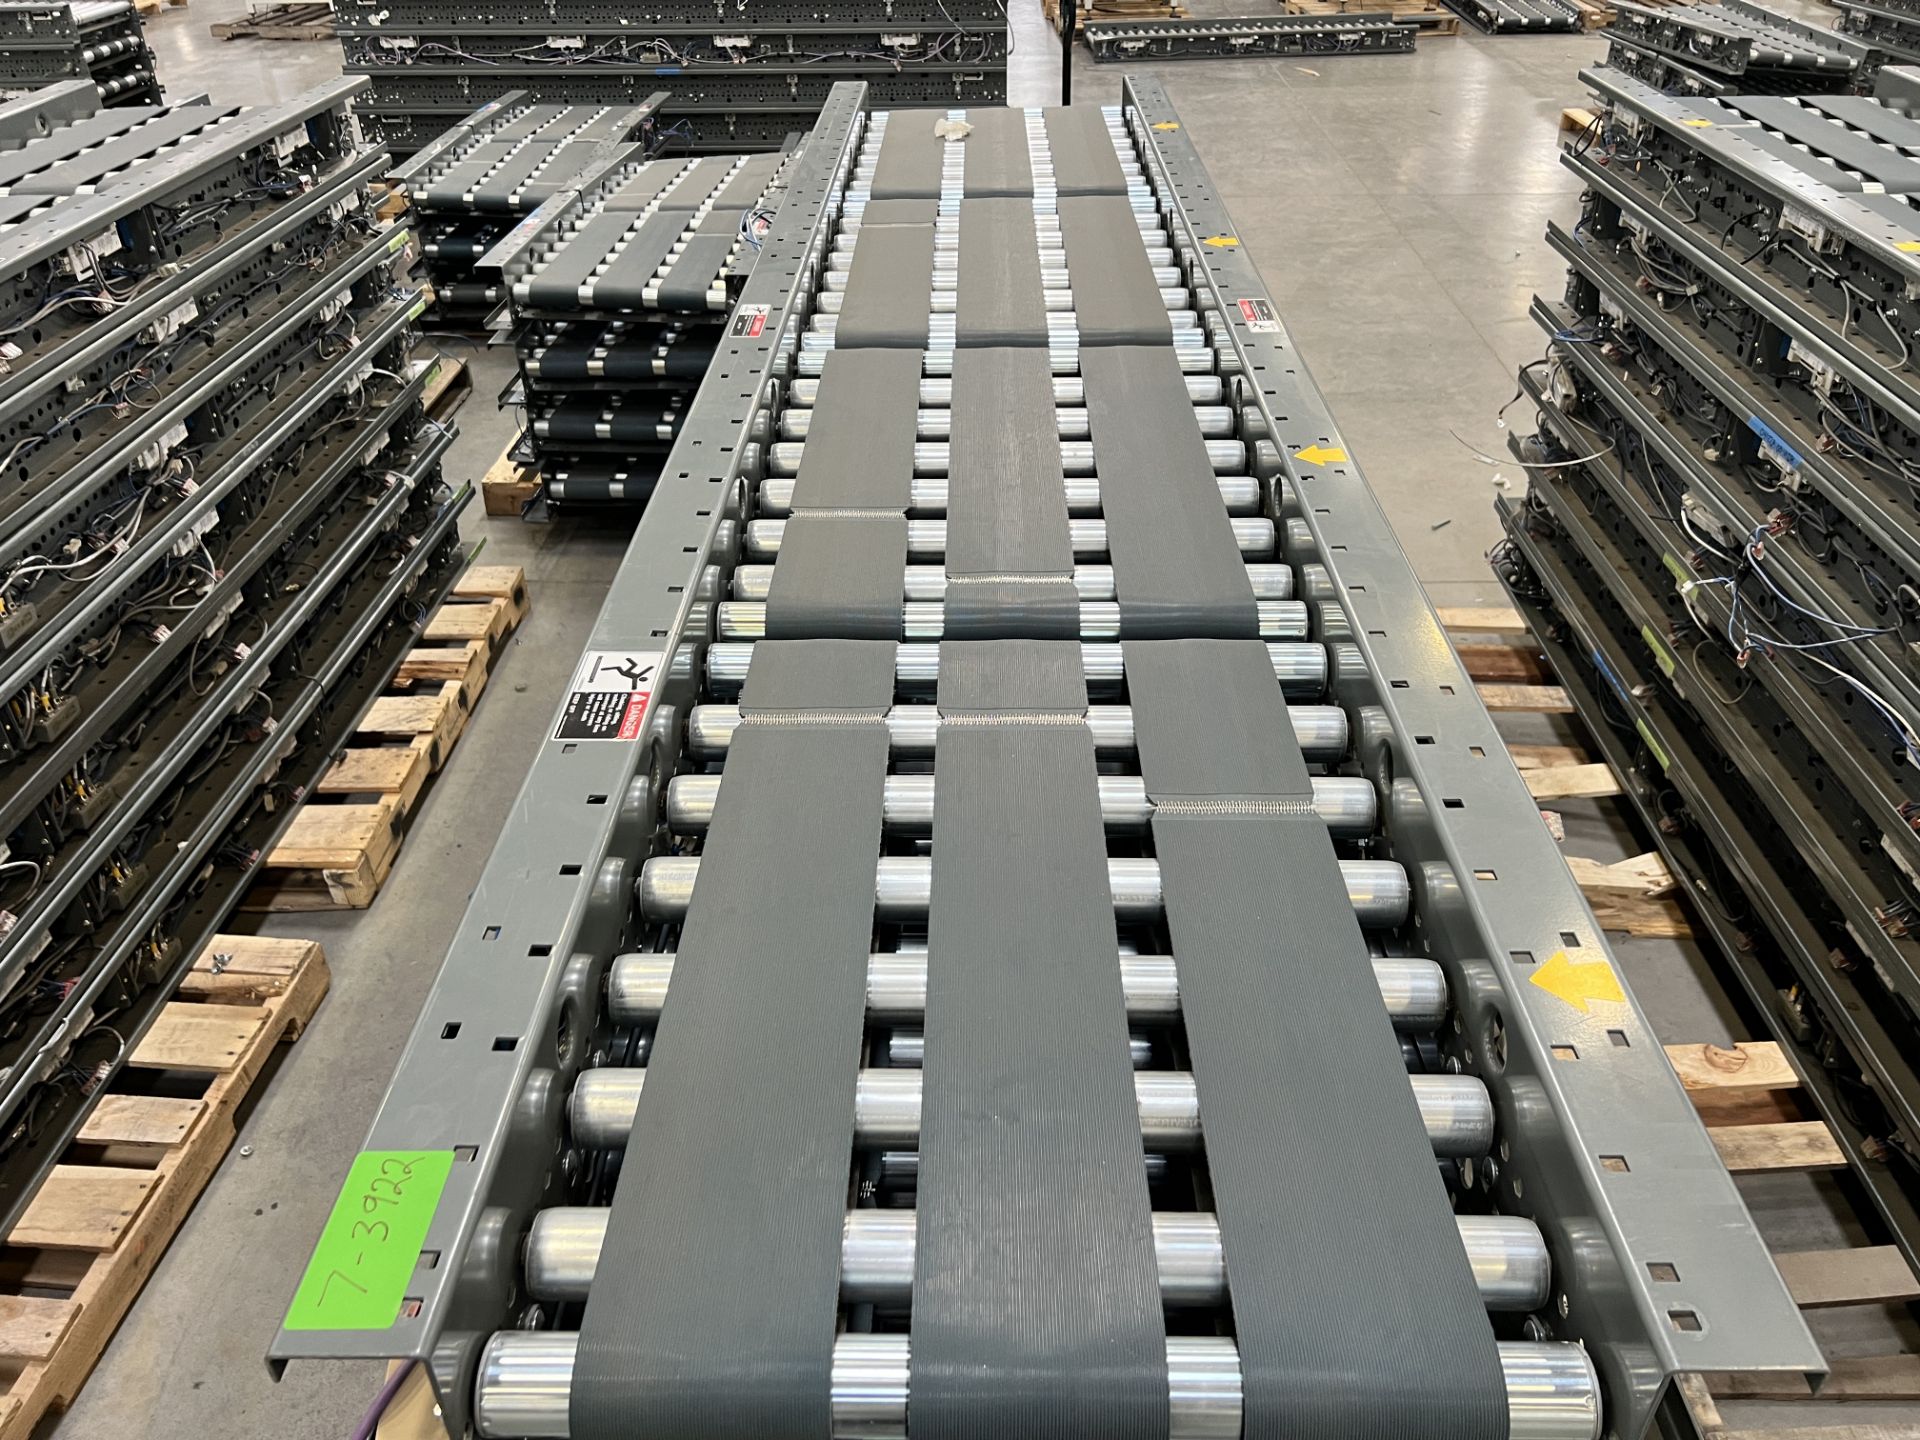 Intelligrated Conveyor MDR Belt - Image 3 of 4